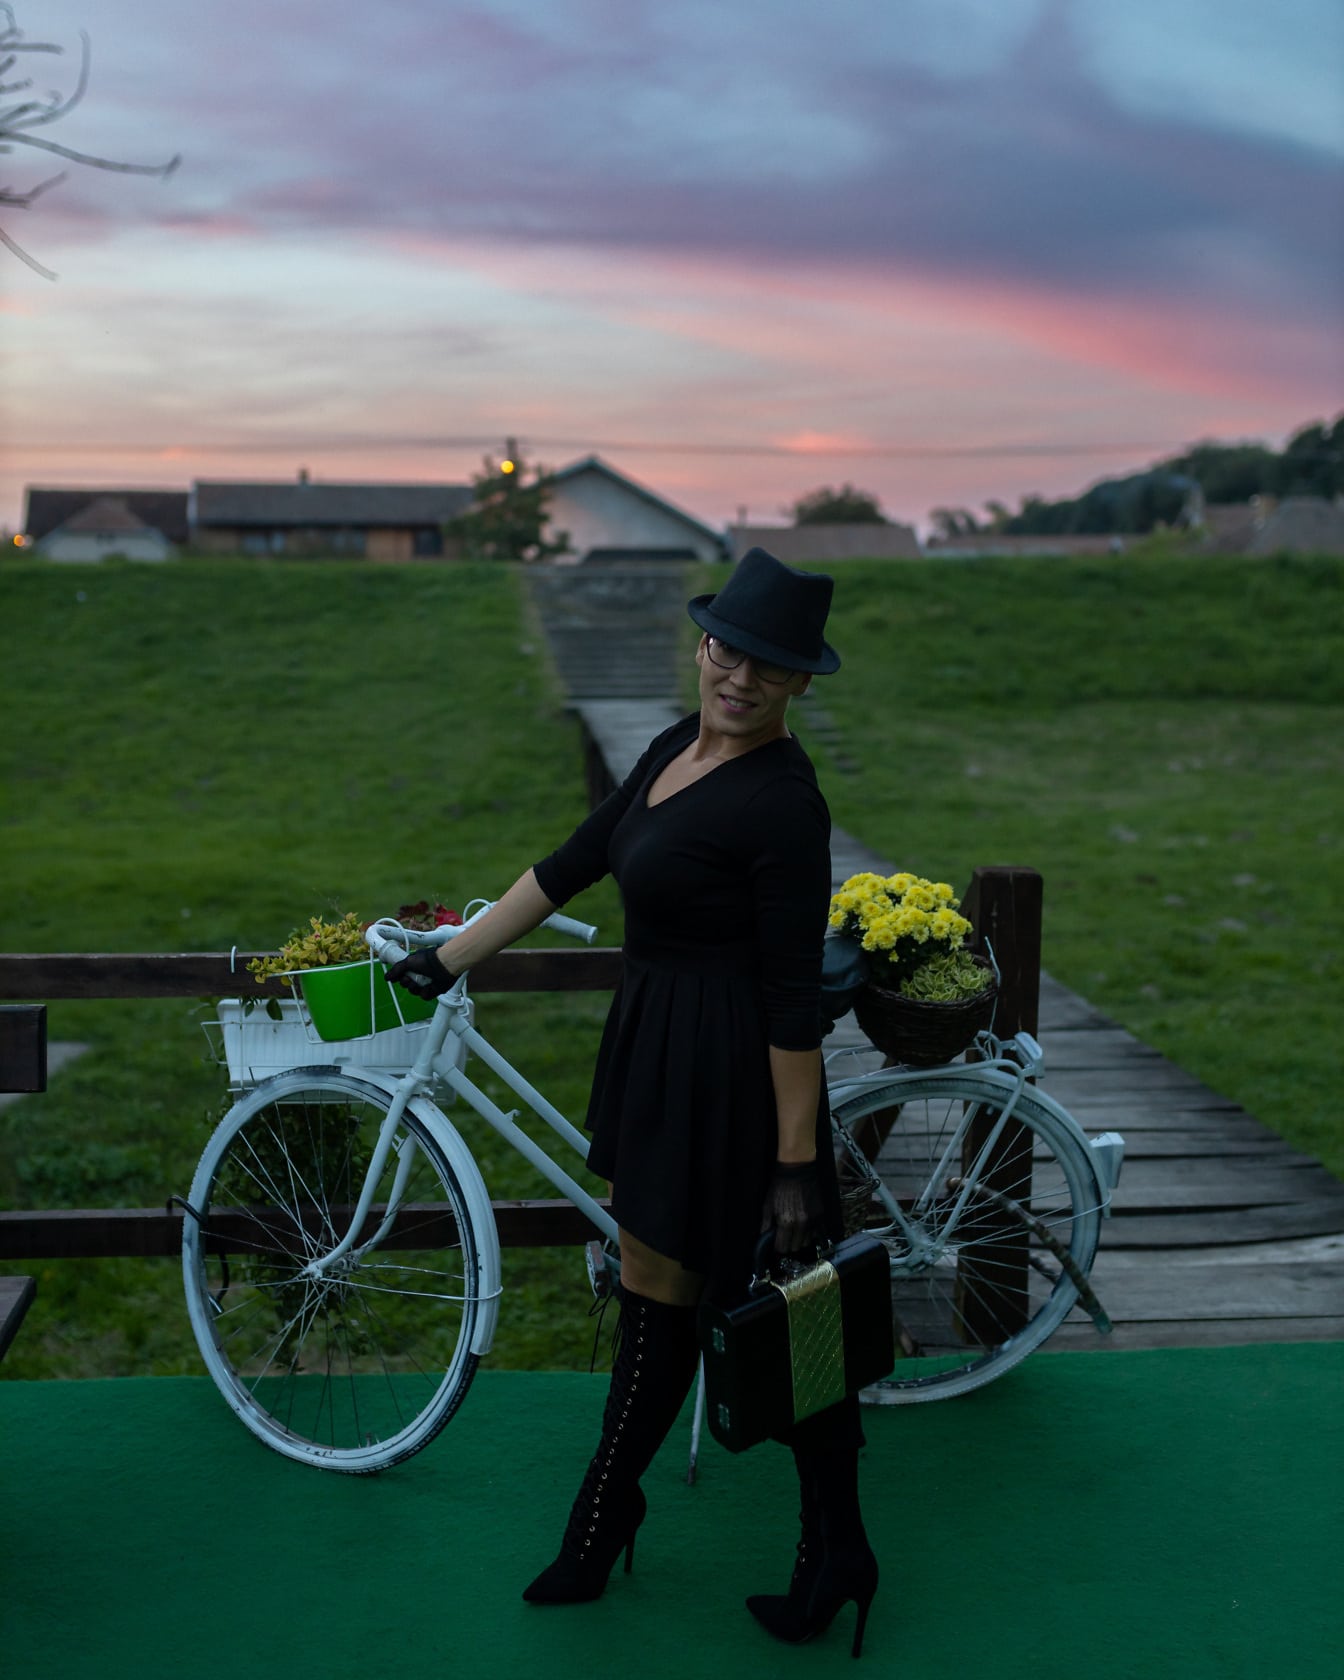 Siyah kıyafetli siyah zarafet kadın bisikletle poz veriyor